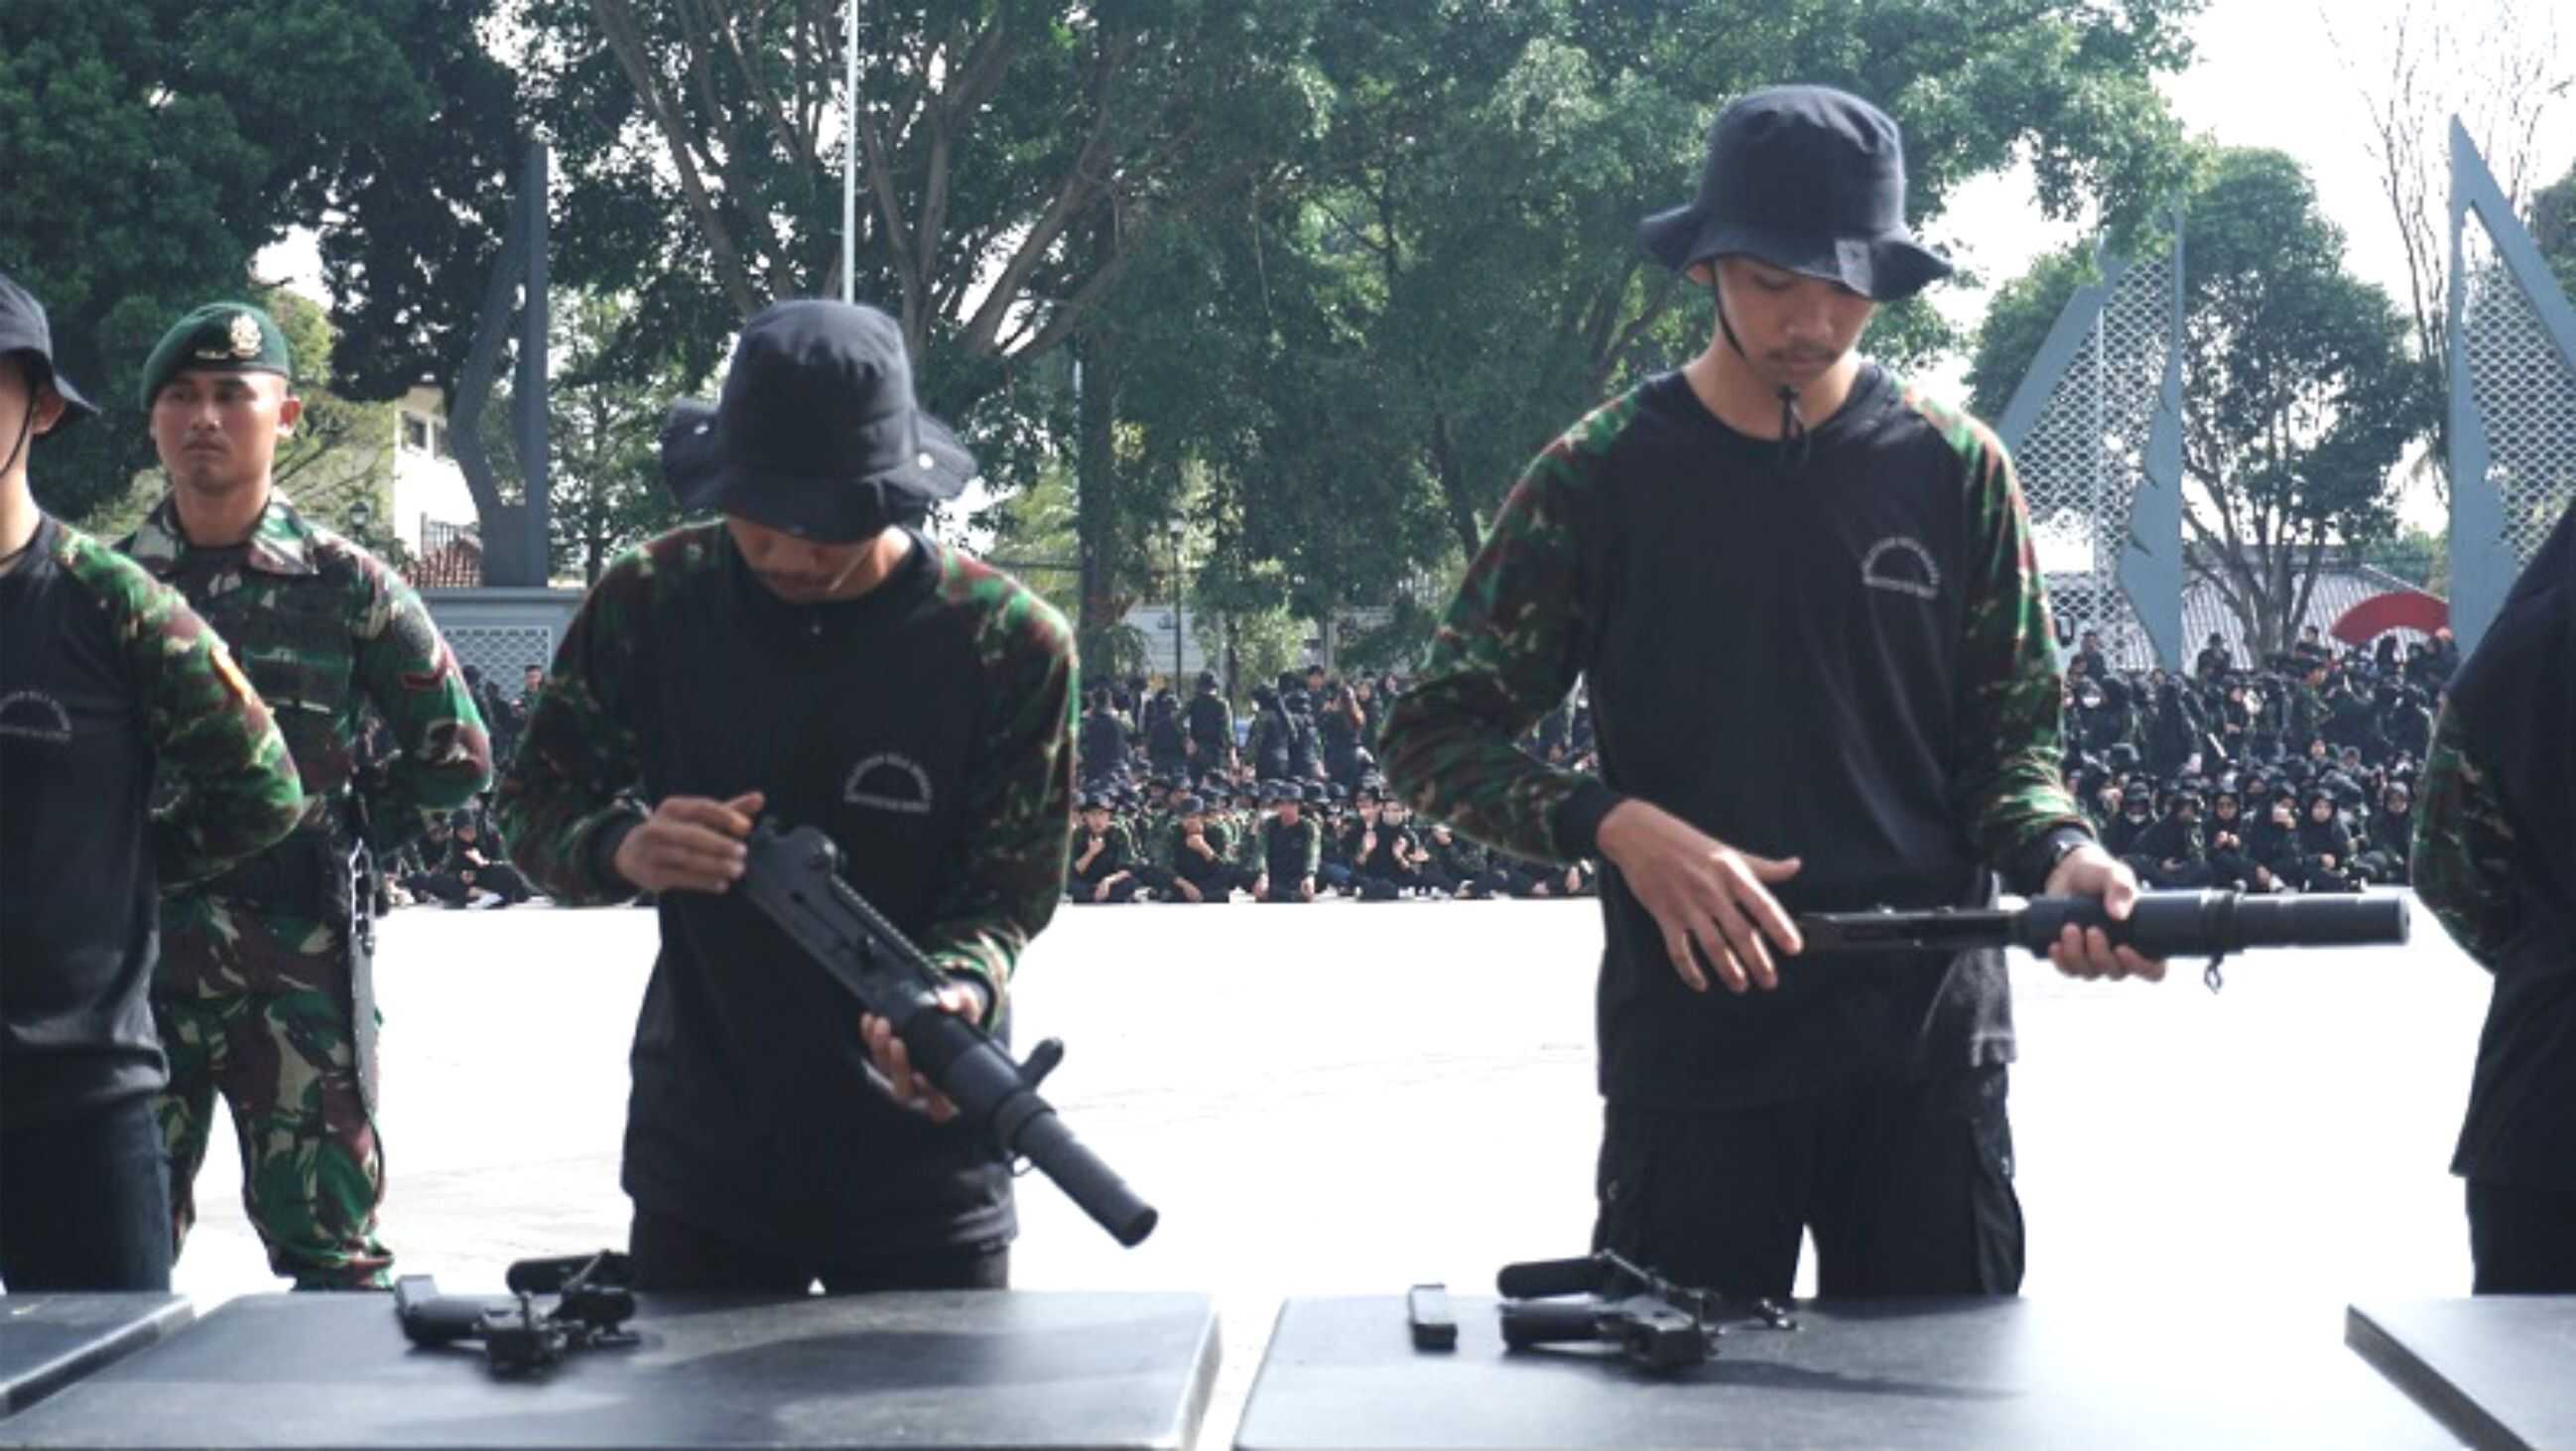 TNI Didik Ribuan Mahasiswa Uniga Tentang Bela Negara, Ada yang Terampil Bongkar Pasang Senjata